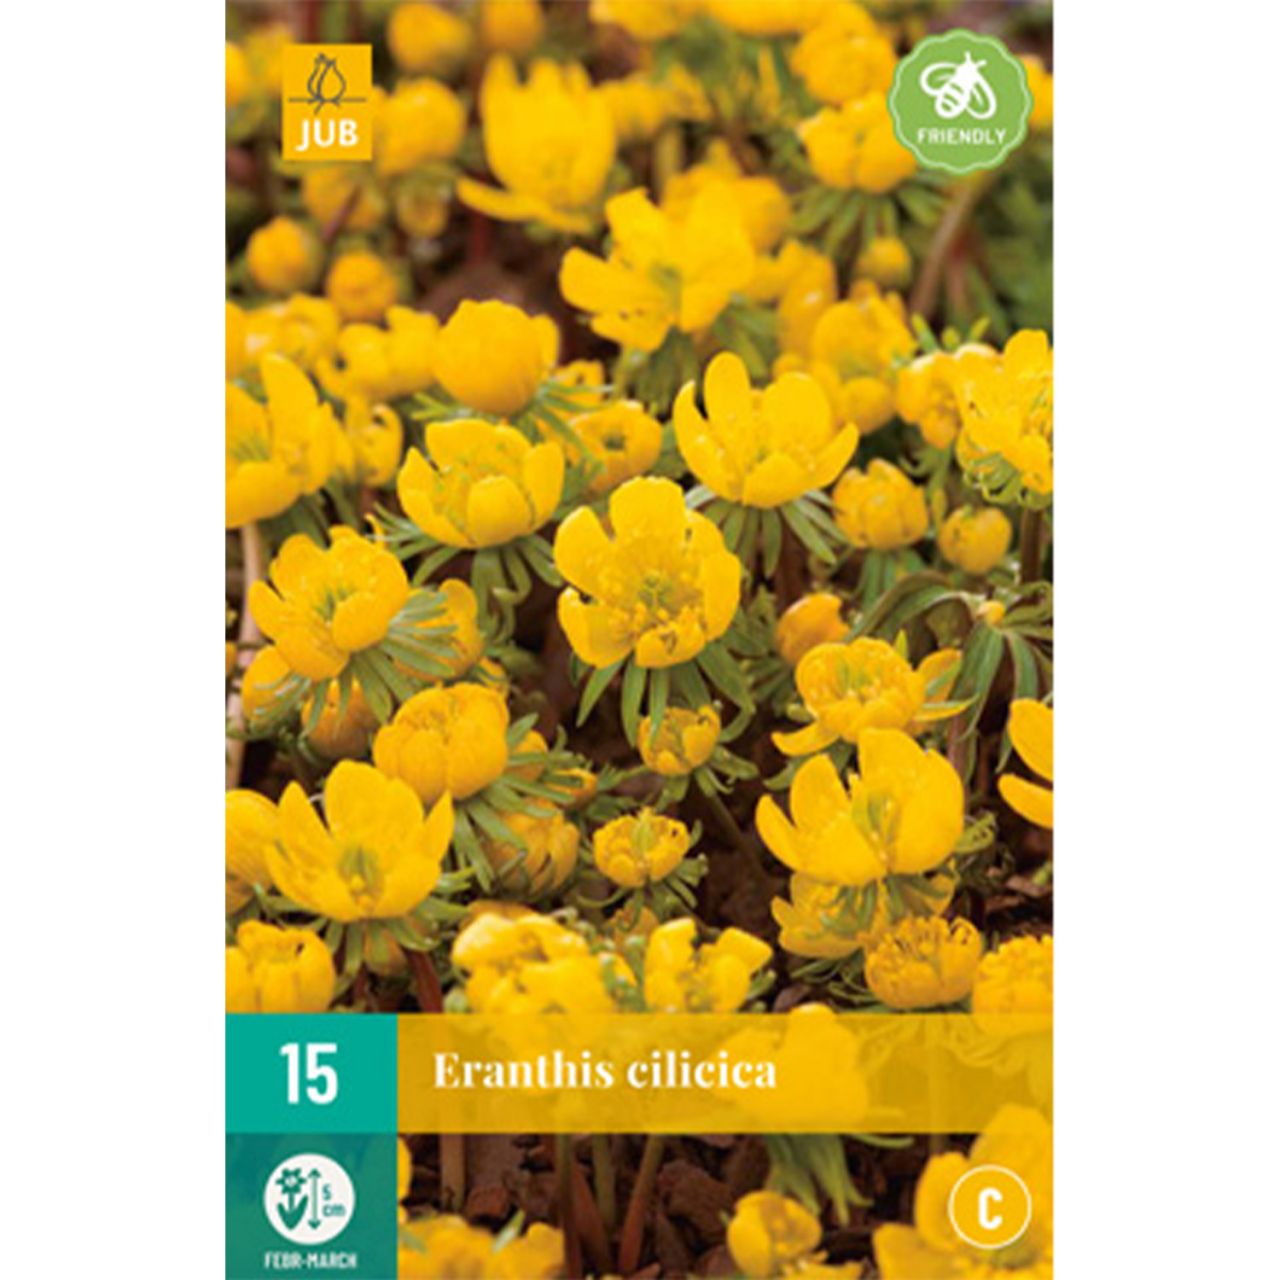 Kategorie <b>Herbst-Blumenzwiebeln </b> - Winterlinge - Eranthis cilicica